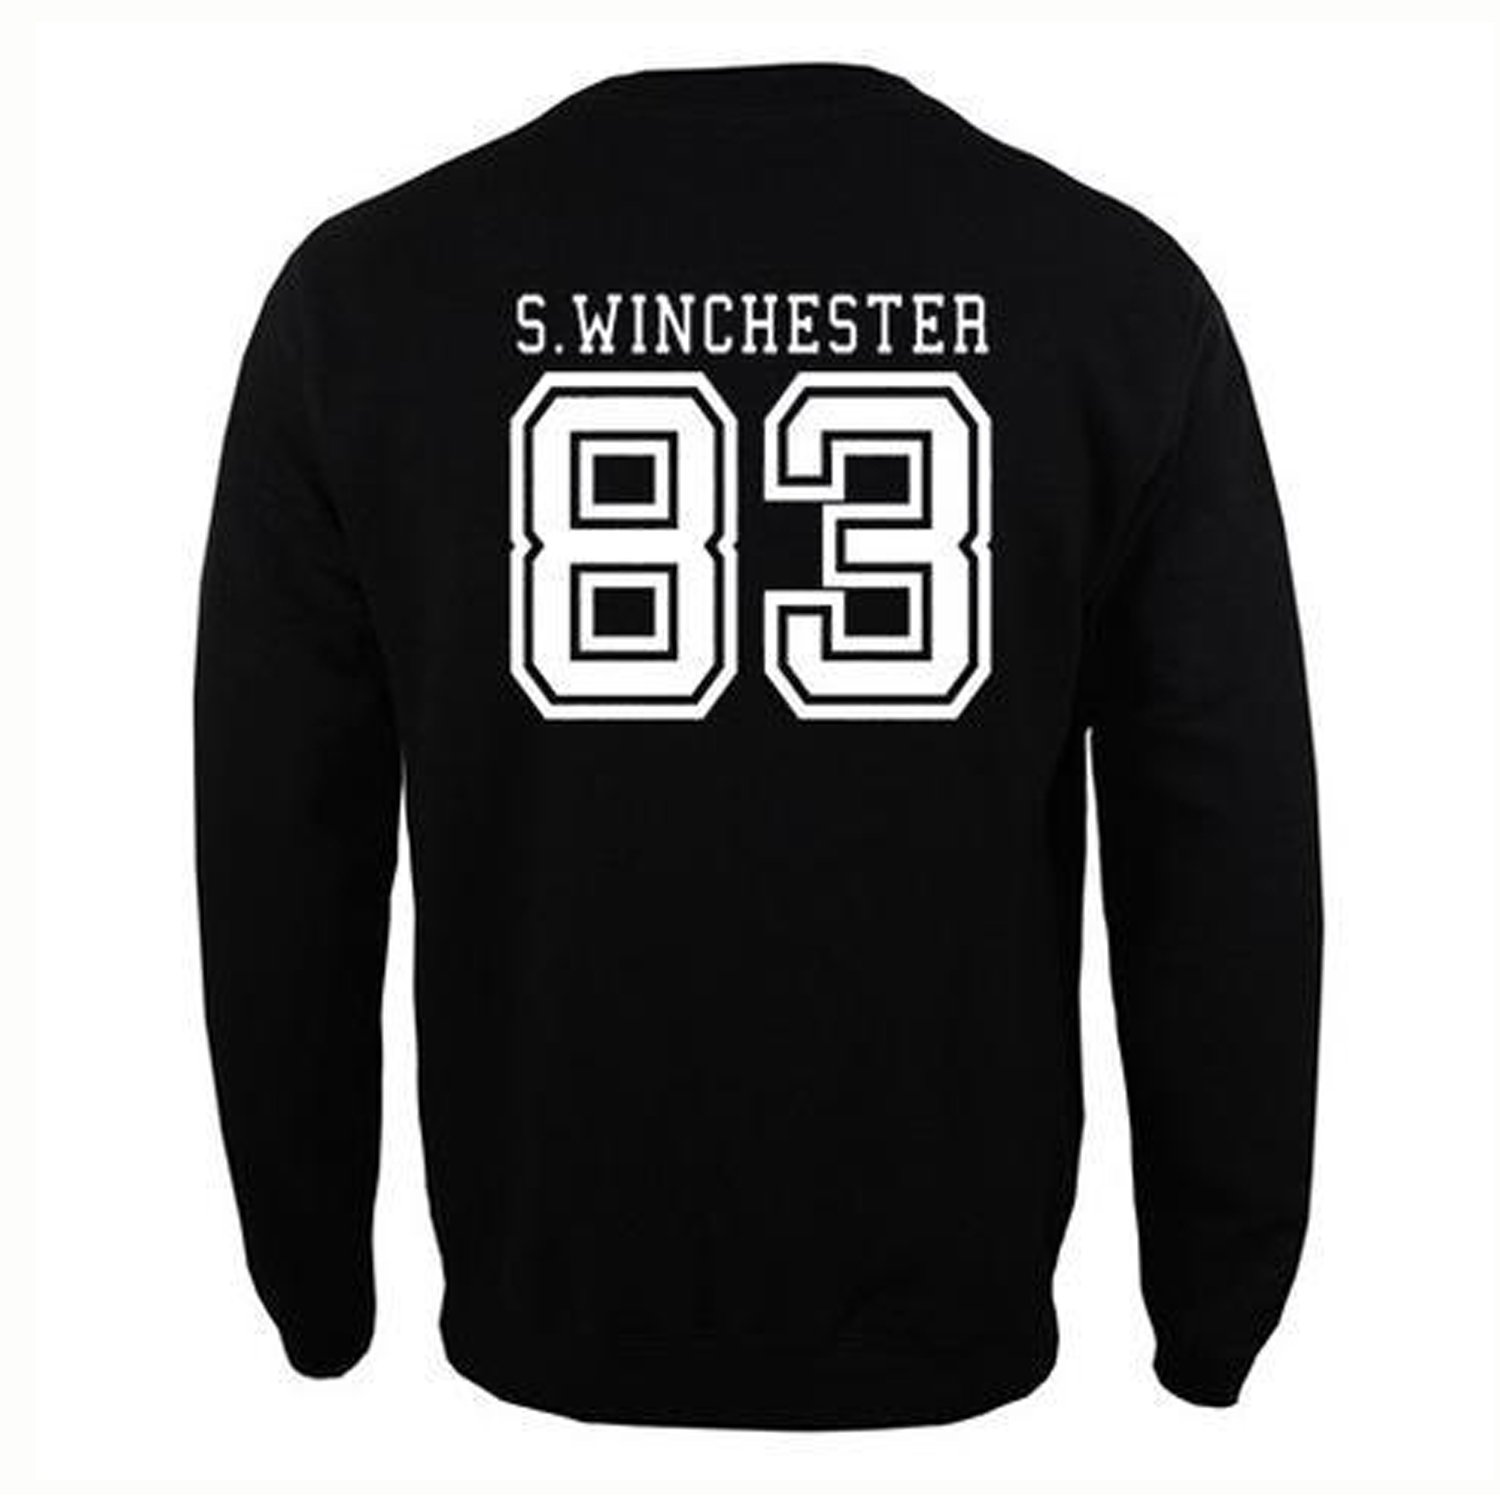 S Winchester 83 Sweatshirt KM